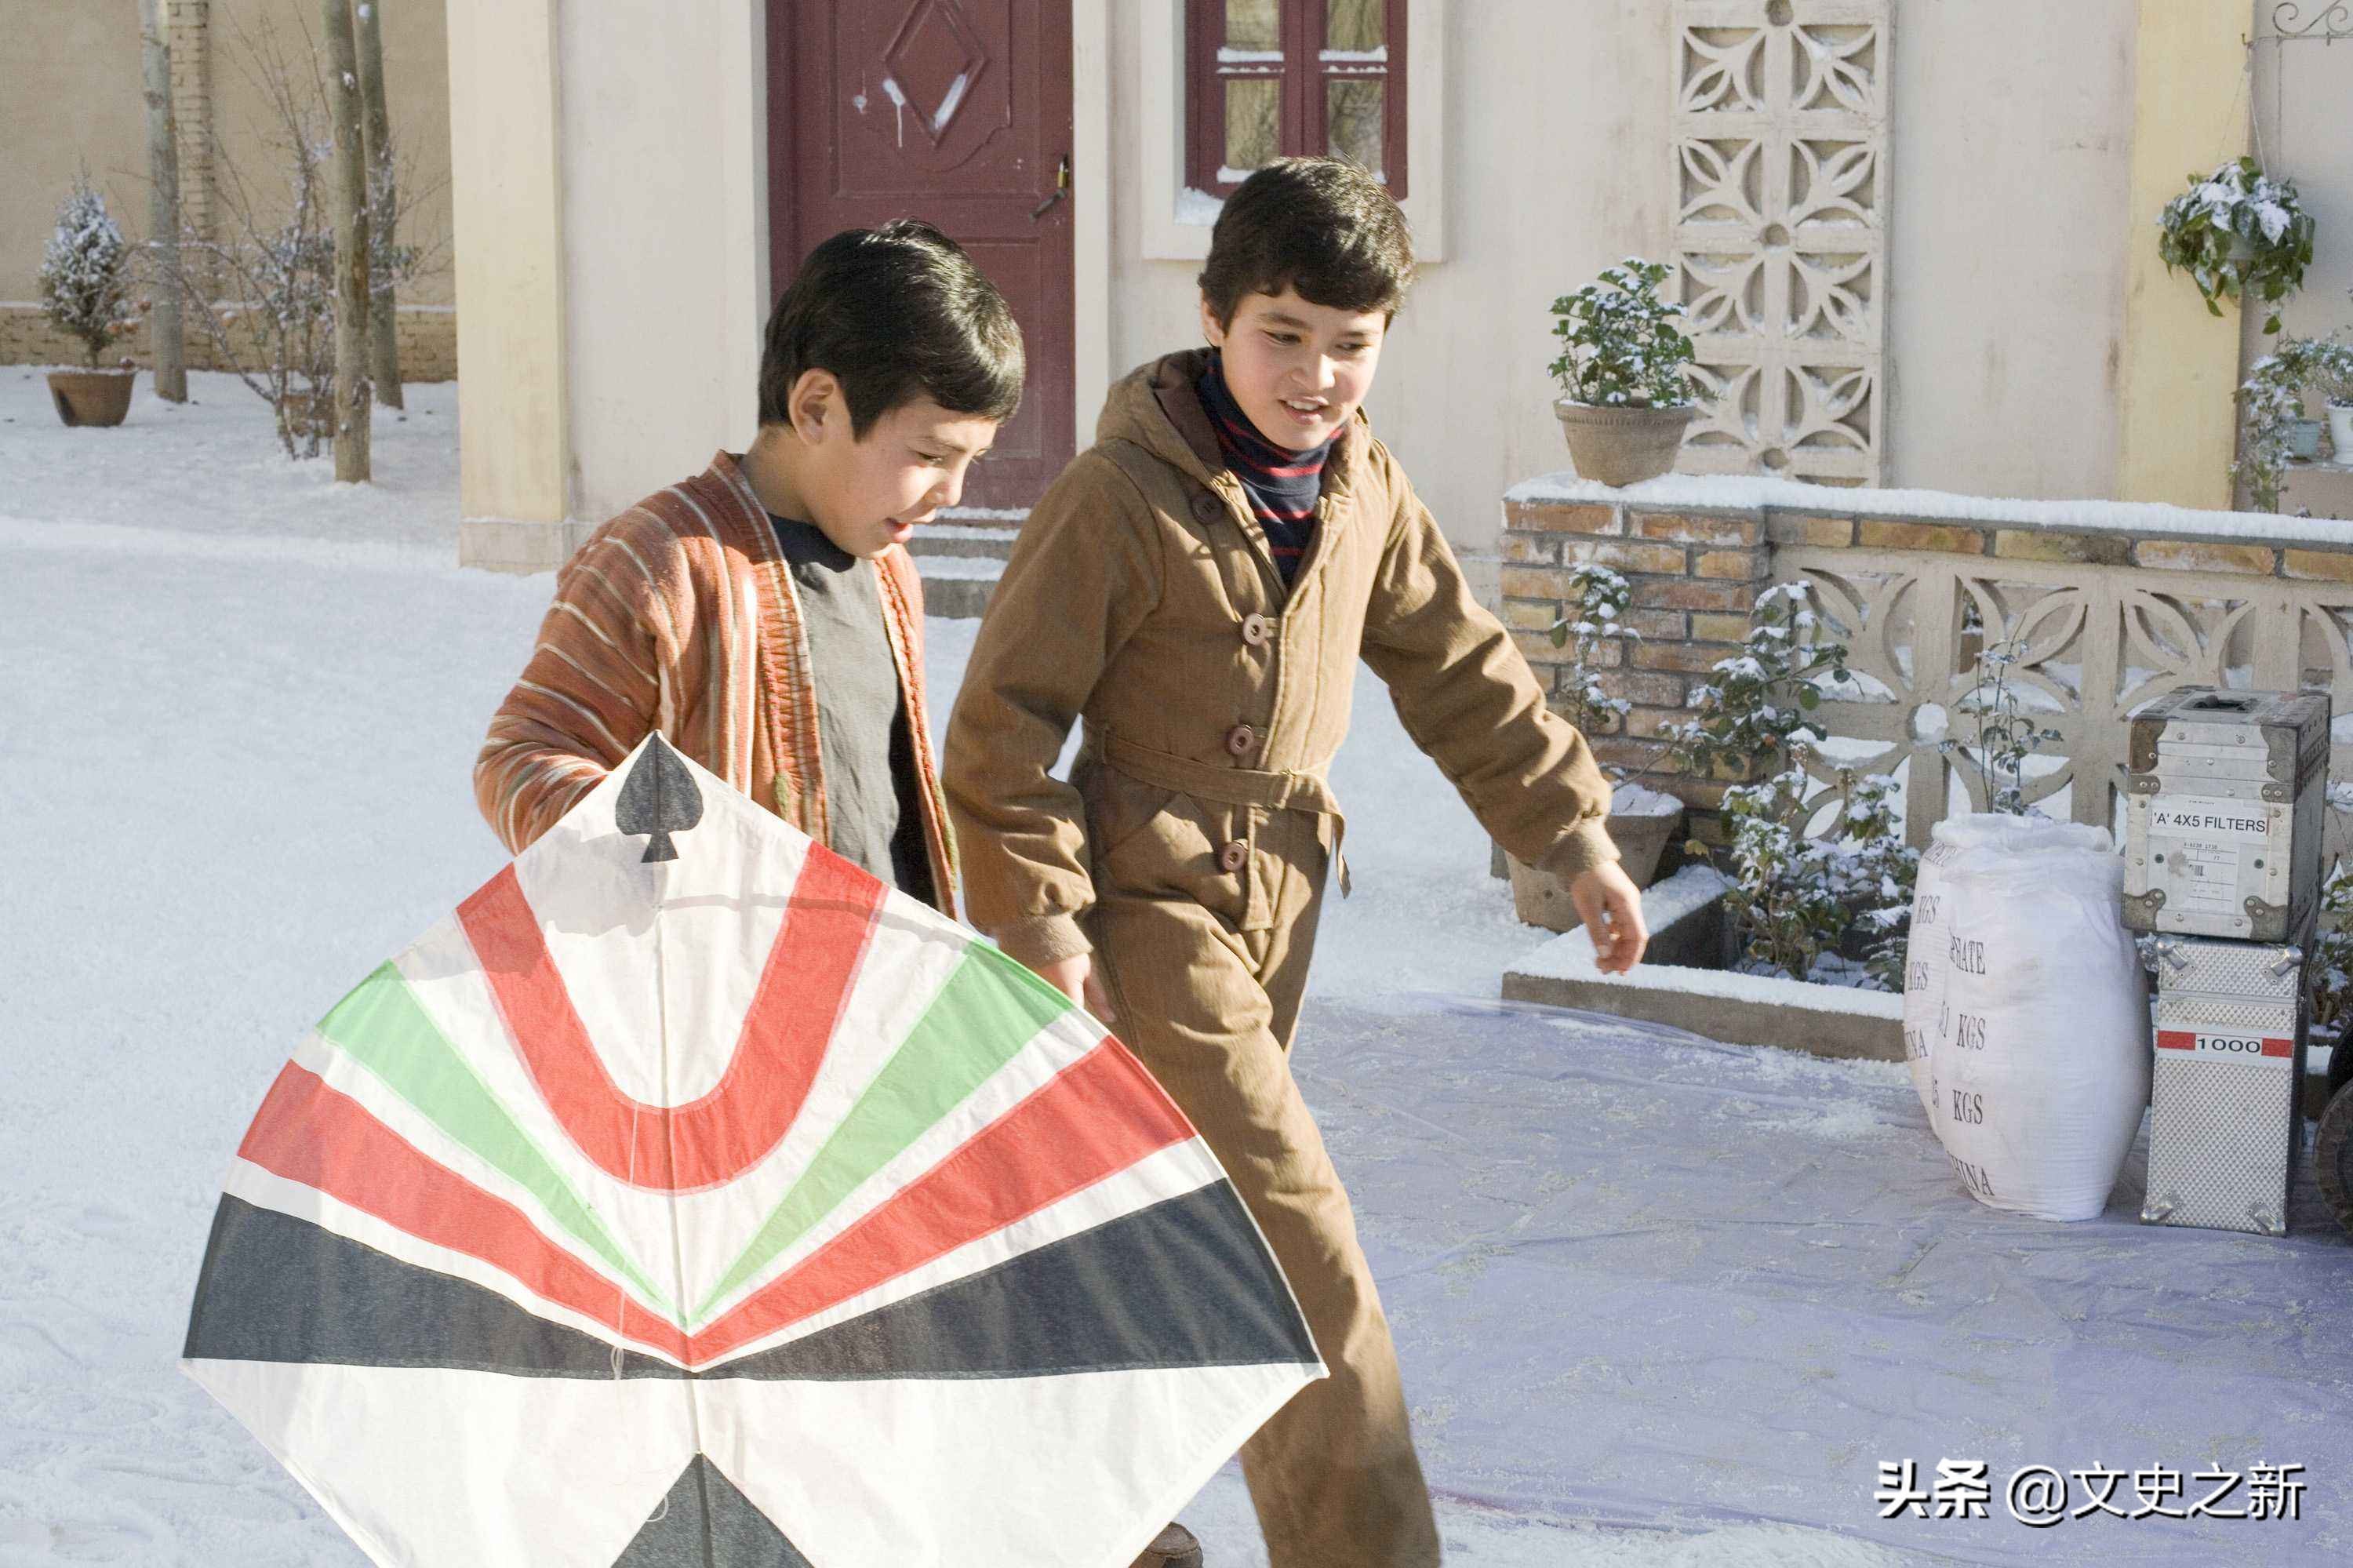 阿富汗名著《追风筝的人》：善恶之间的人性，塔利班令人触目惊心